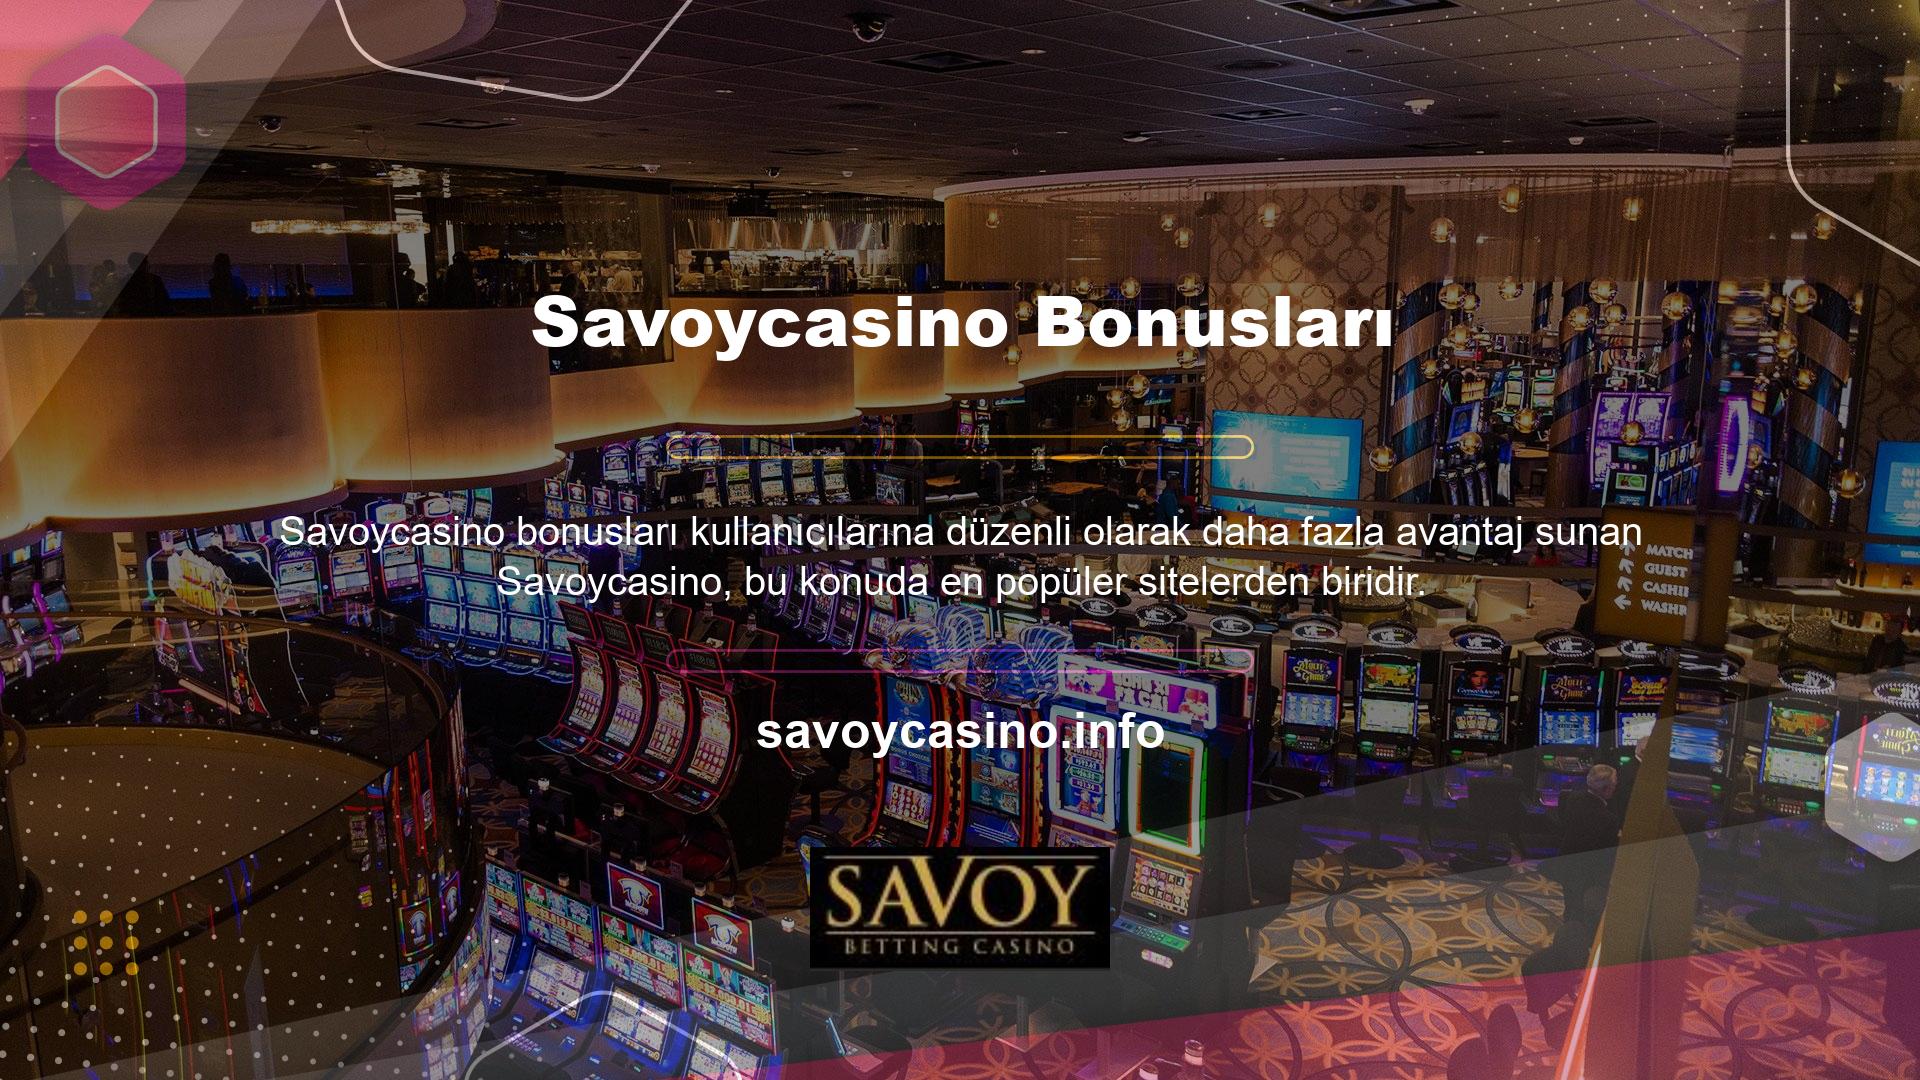 Savoycasino Bonus, ilk Savoycasino Hoş Geldin Bonusu da dahil olmak üzere çeşitli bonuslar sunar